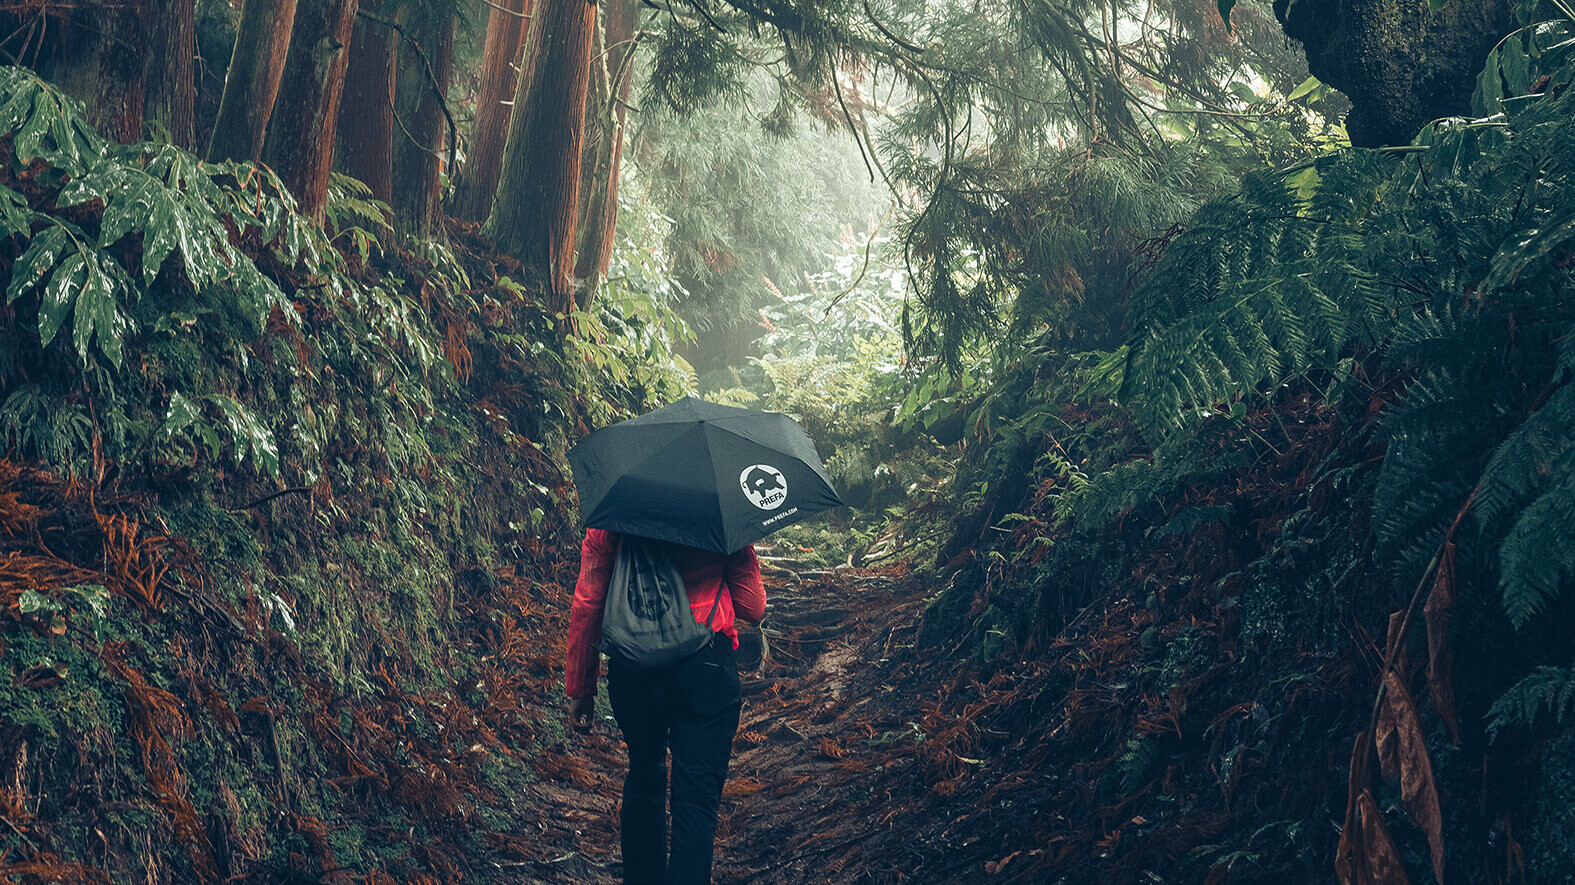 Fotoet  i skogen av en kvinnelig turgåer i rød jakke med PREFA paraply og treningsbag, symboliserer PREFA miljøvern og bærekraft, samt sirkulærøkonomi og resirkulering